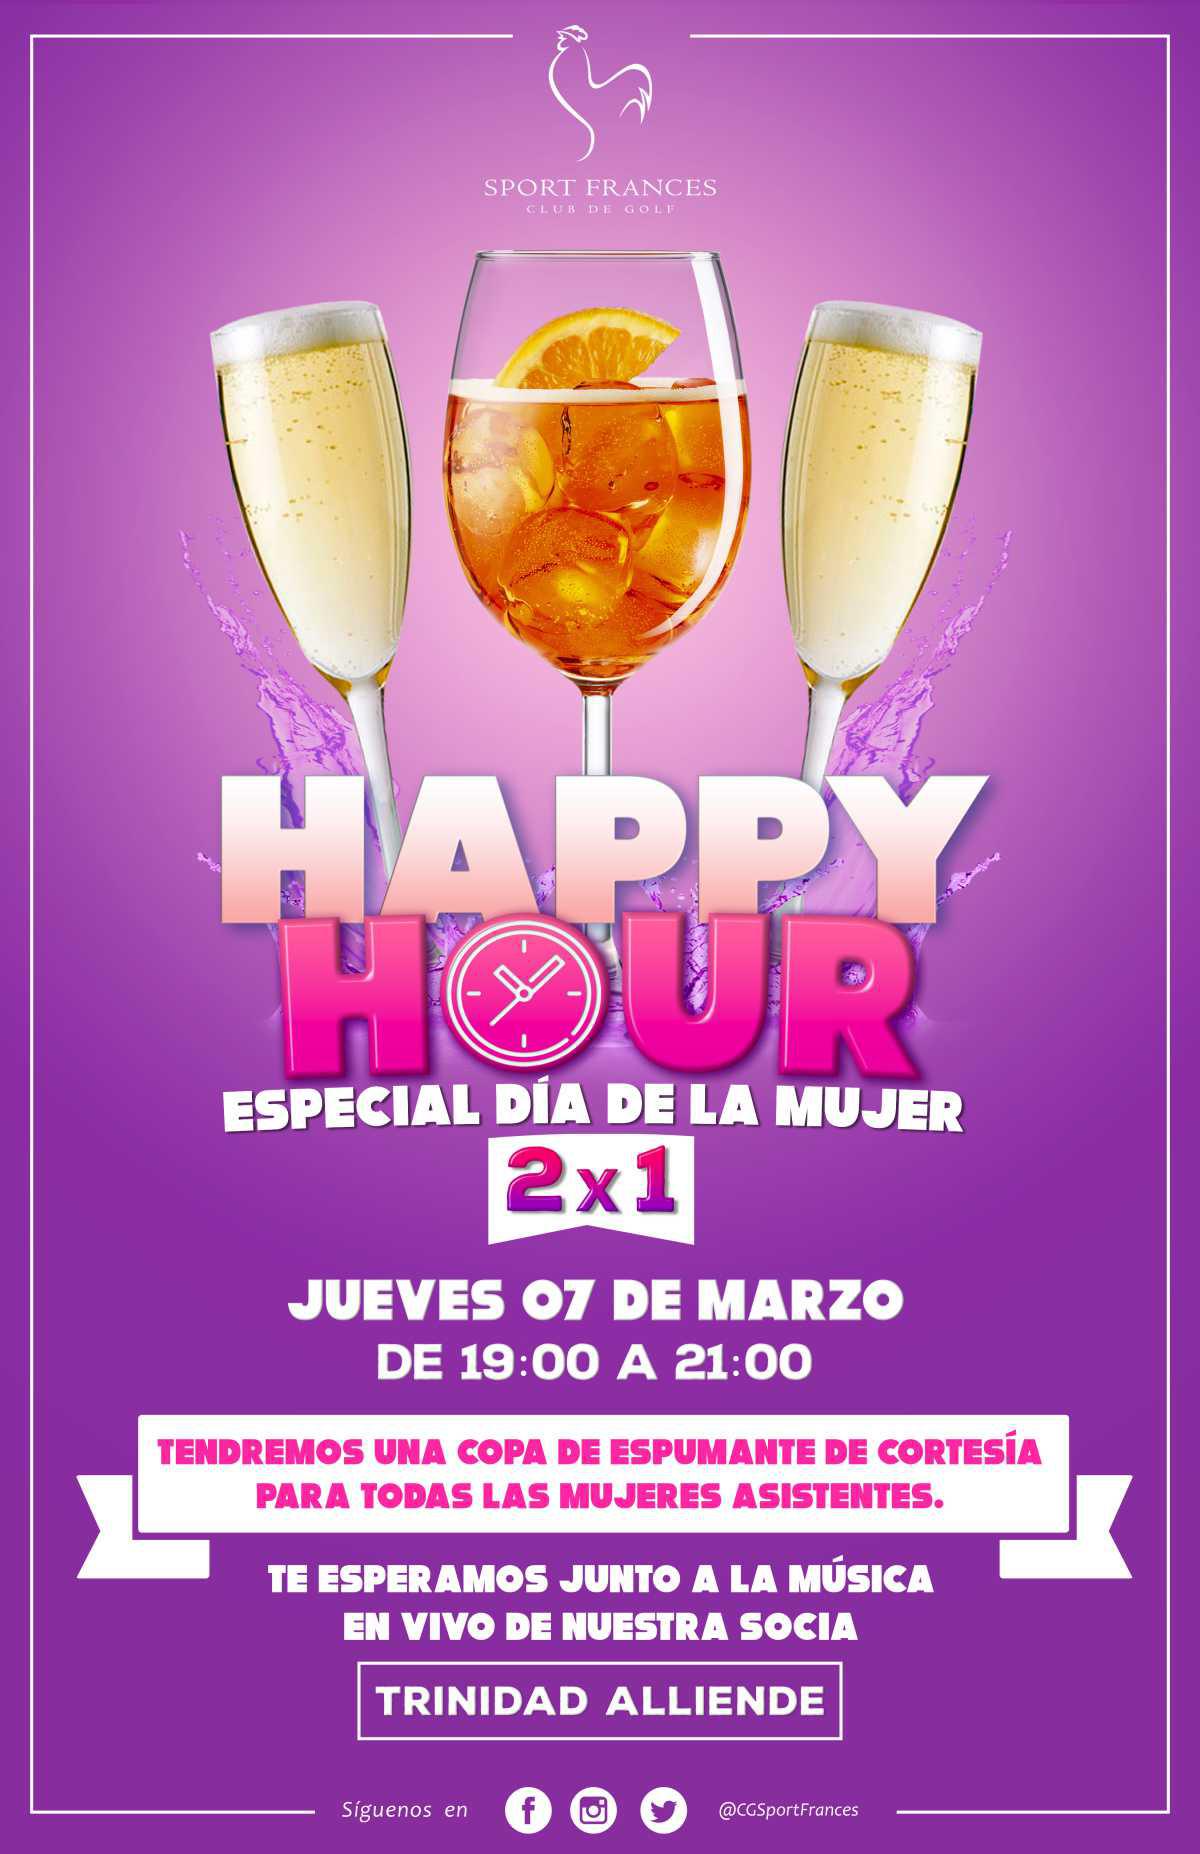 Happy hour - Especial Día de la mujer